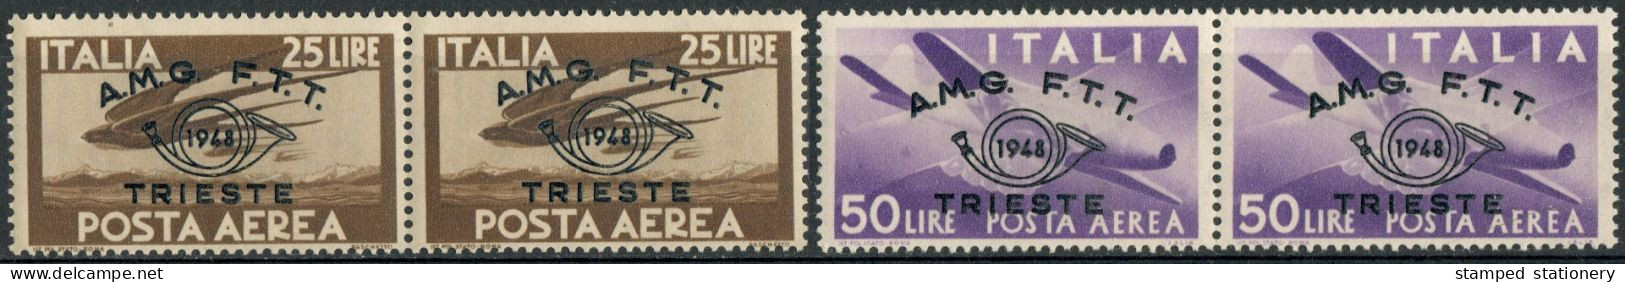 AMG-FTT 1948 POSTA AEREA L. 25 50 CONVEGNO FILATELICO TRIESTE SOPRASTAMPATI 'AMG-FTT' COLLA BICOLORE - SASSONE PA18/9 - Posta Aerea